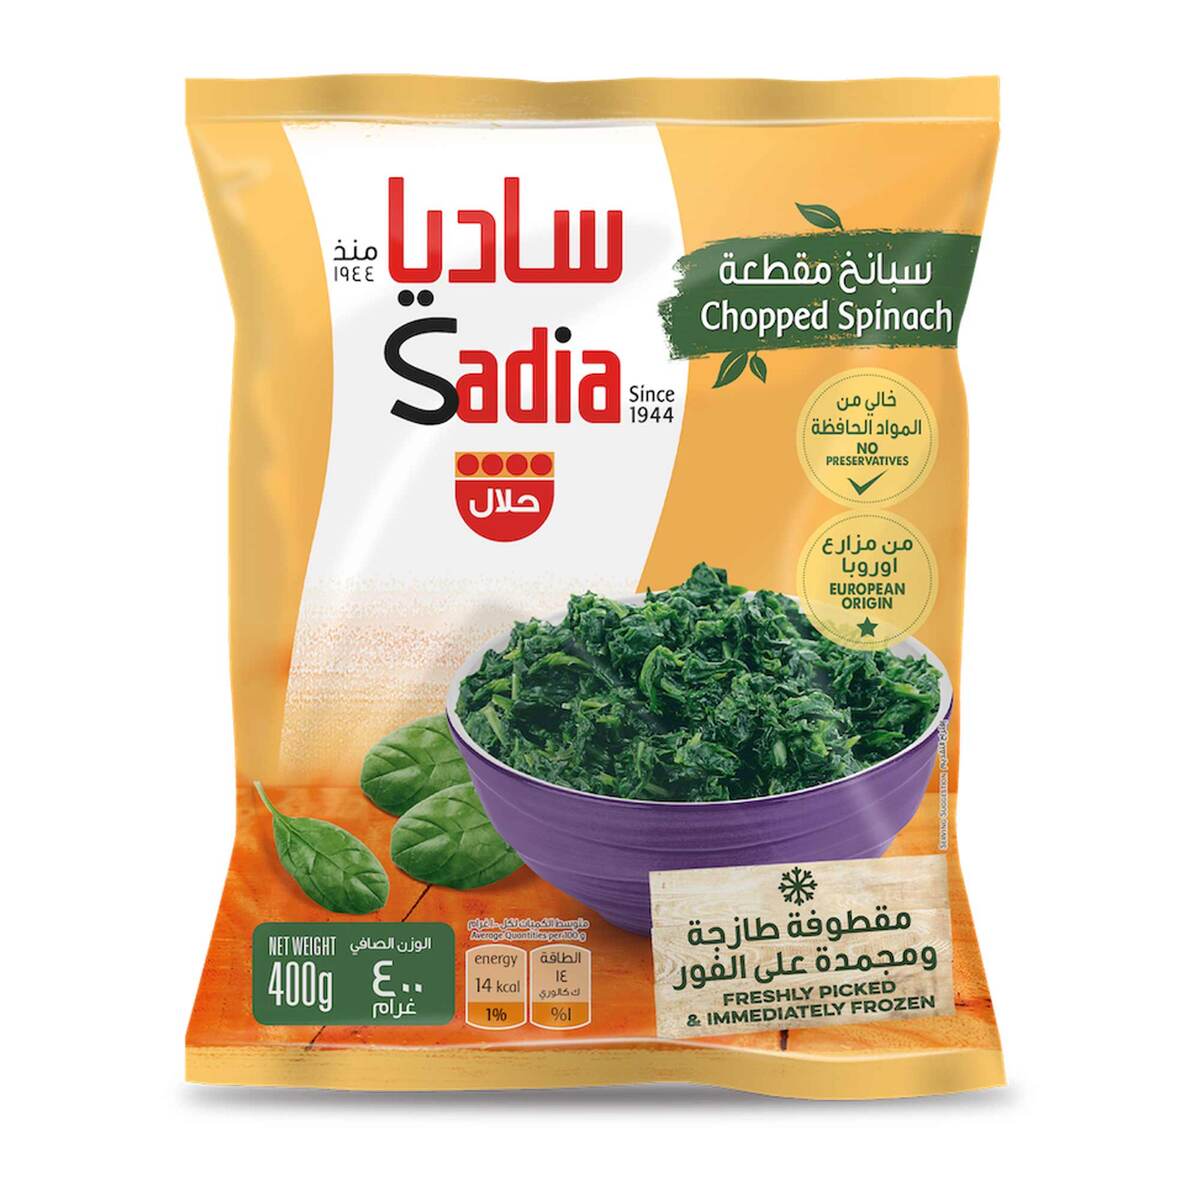 اشتري قم بشراء ساديا - سبانخ مفرومة مجمدة 400 جرام Online at Best Price من الموقع - من لولو هايبر ماركت Othr.Froz. Vegetable في السعودية